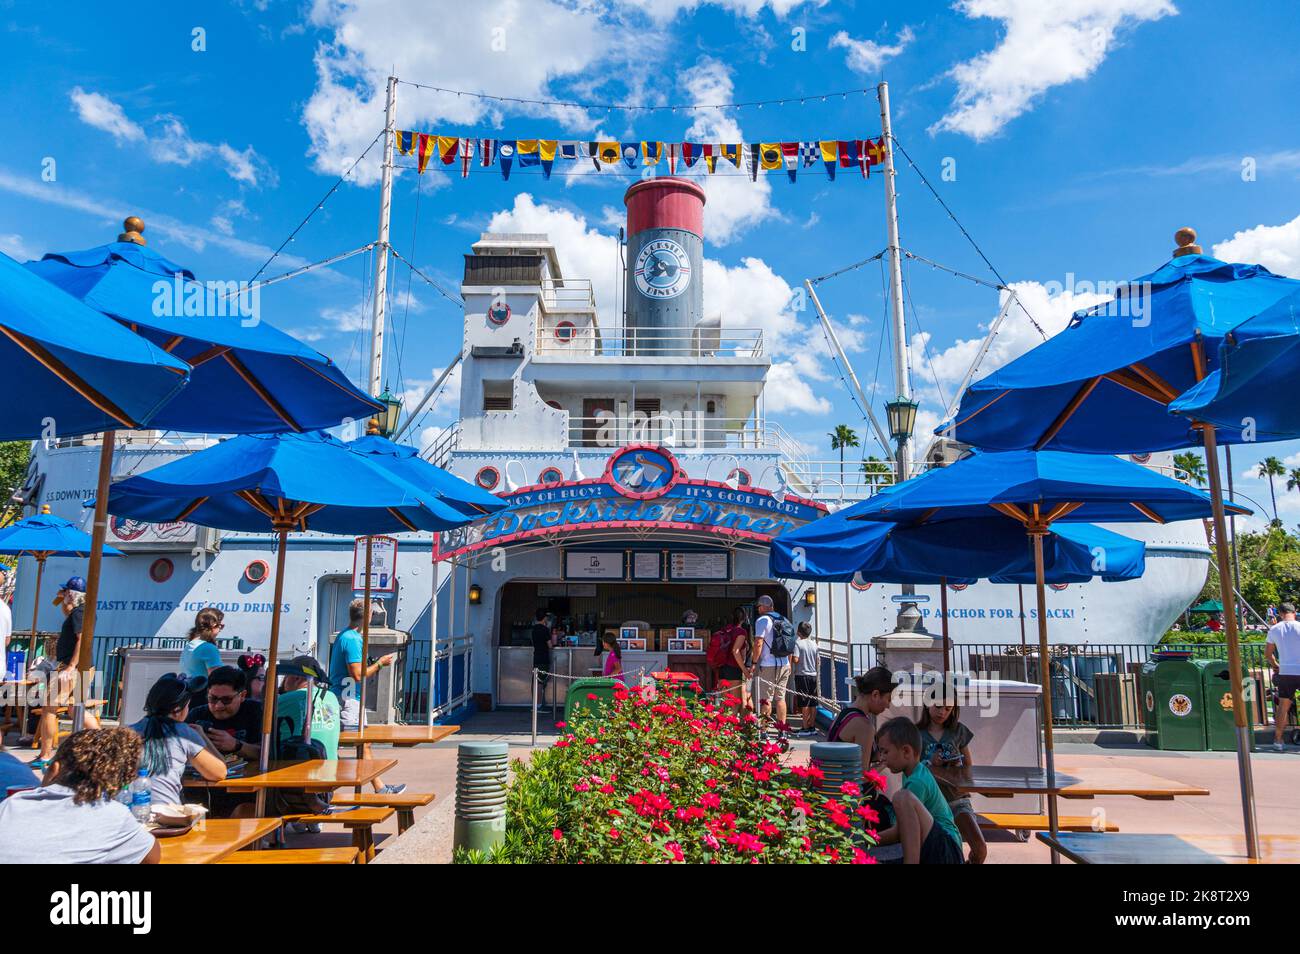 Dockside Diner ristorante a servizio rapido presso gli Hollywood Studios - Walt Disney World Resort, Lake Buena Vista, Florida, Stati Uniti Foto Stock